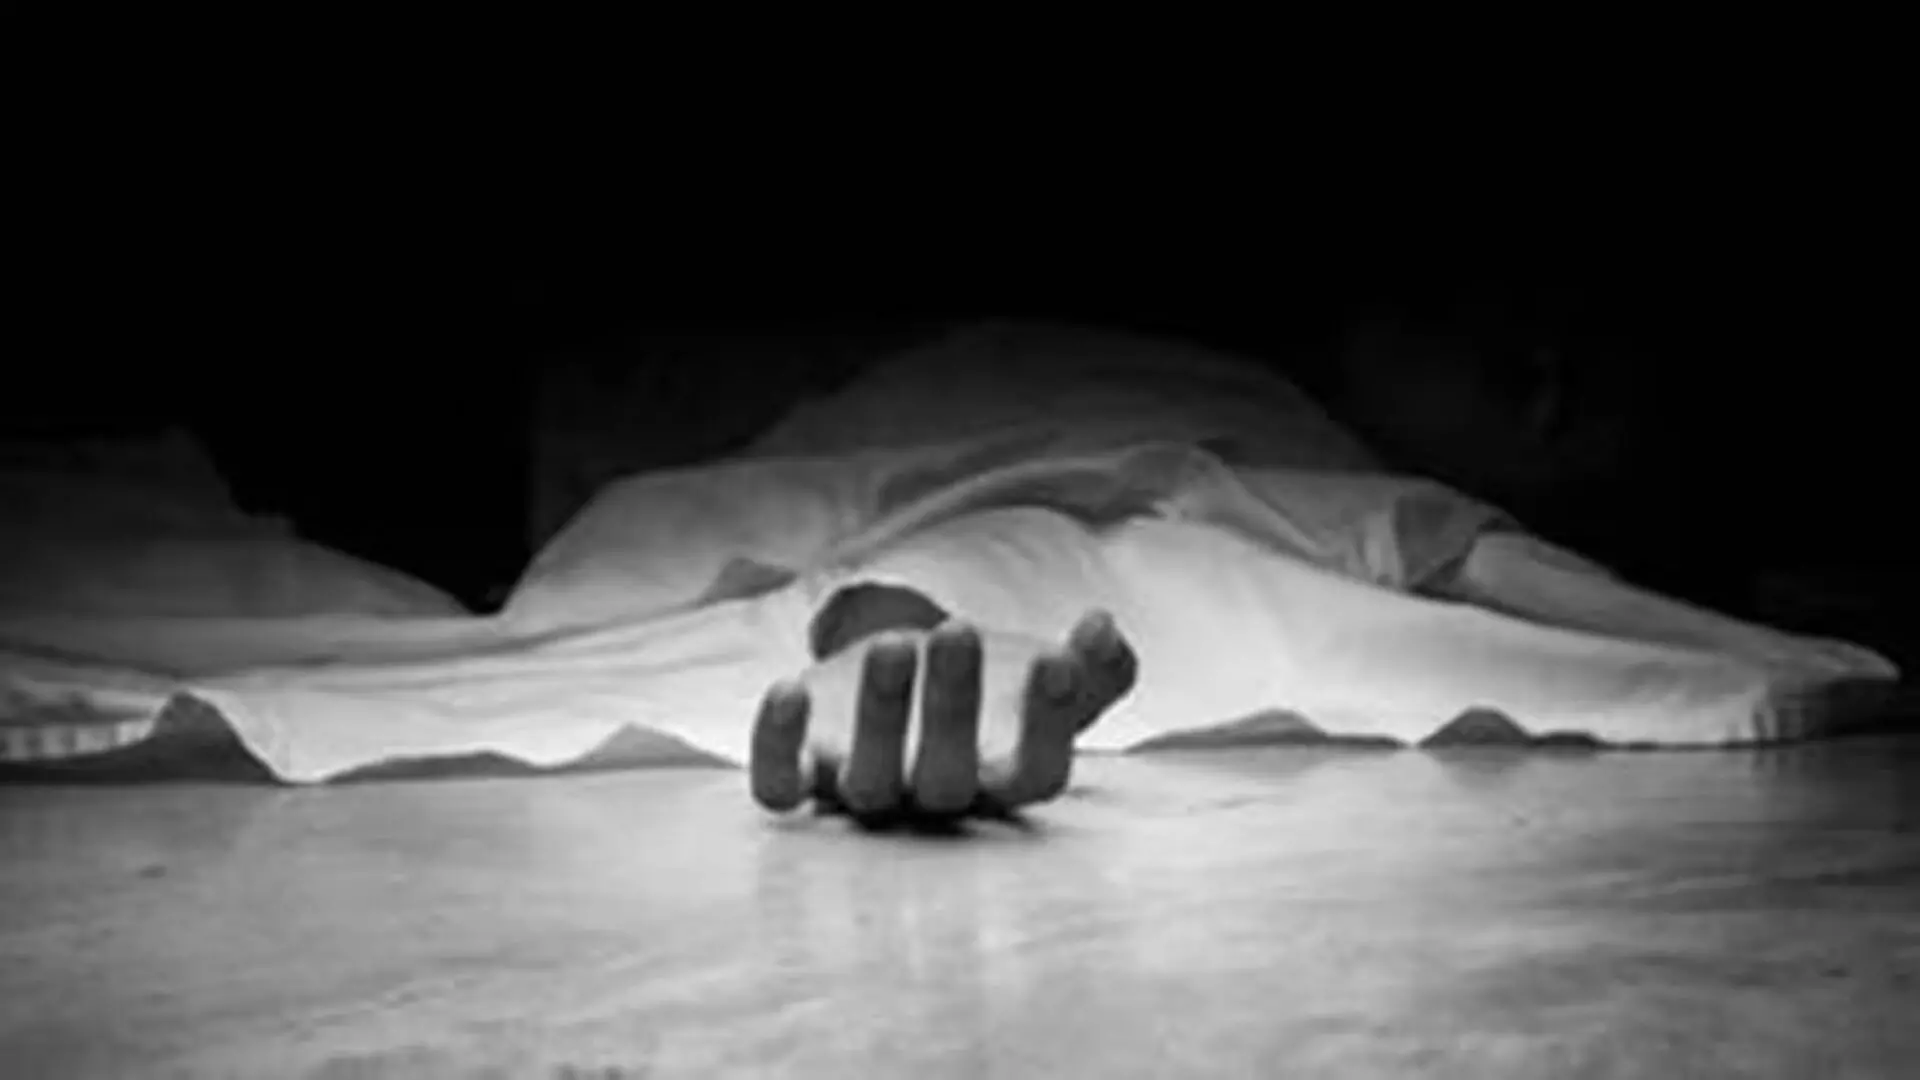 UP: आर्थिक तंगी से परेशान होकर महिला ने की आत्महत्या की कोशिश